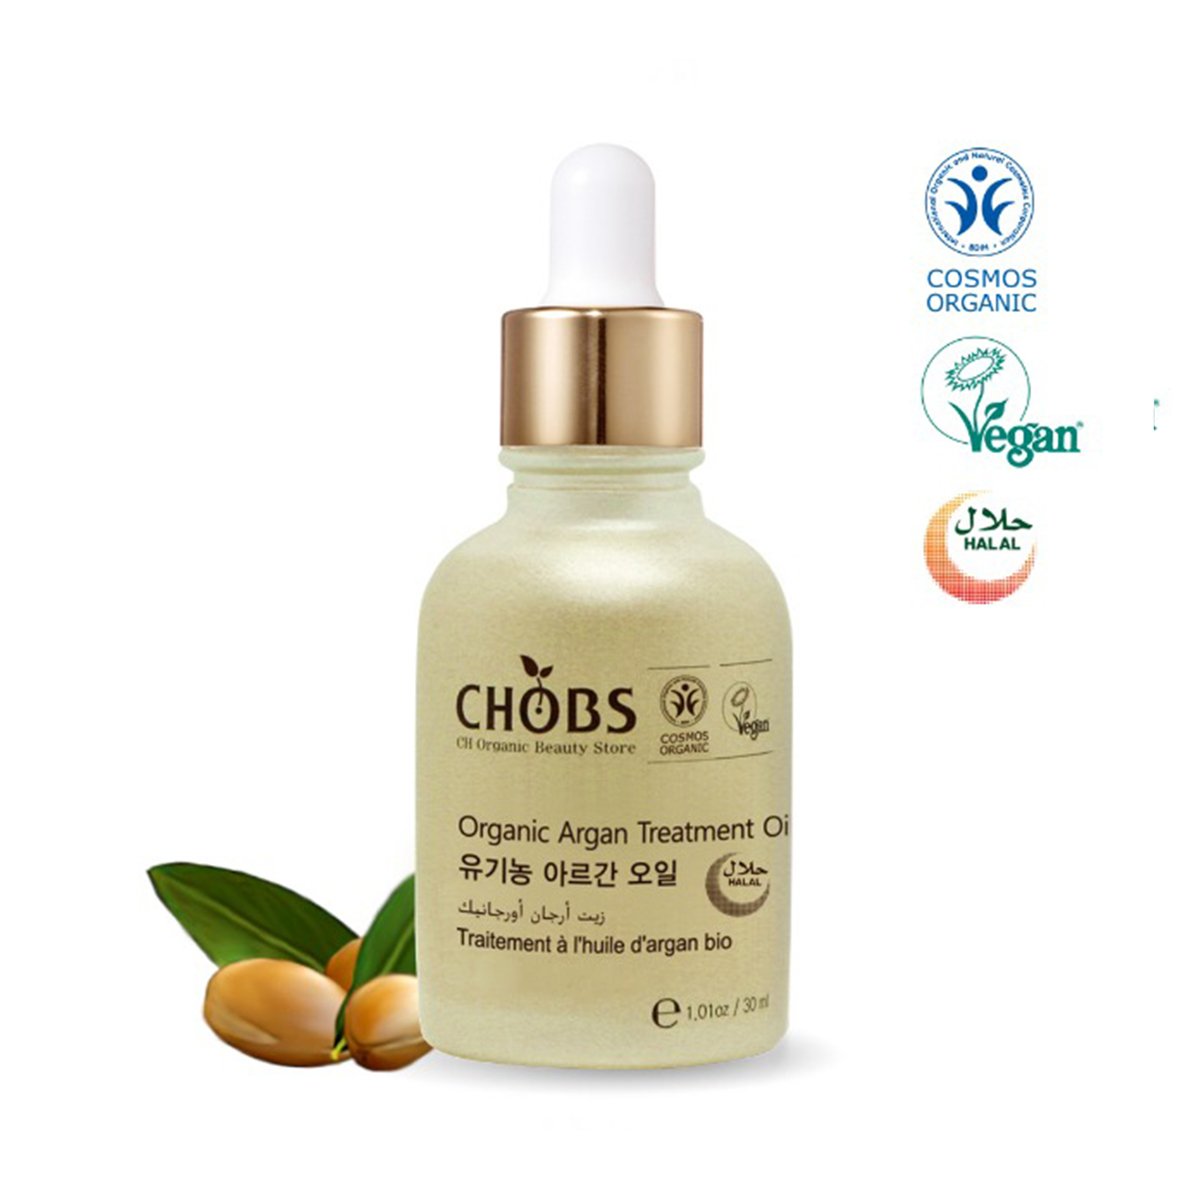 Chobs Organic Argan Treatment Oil 30ml